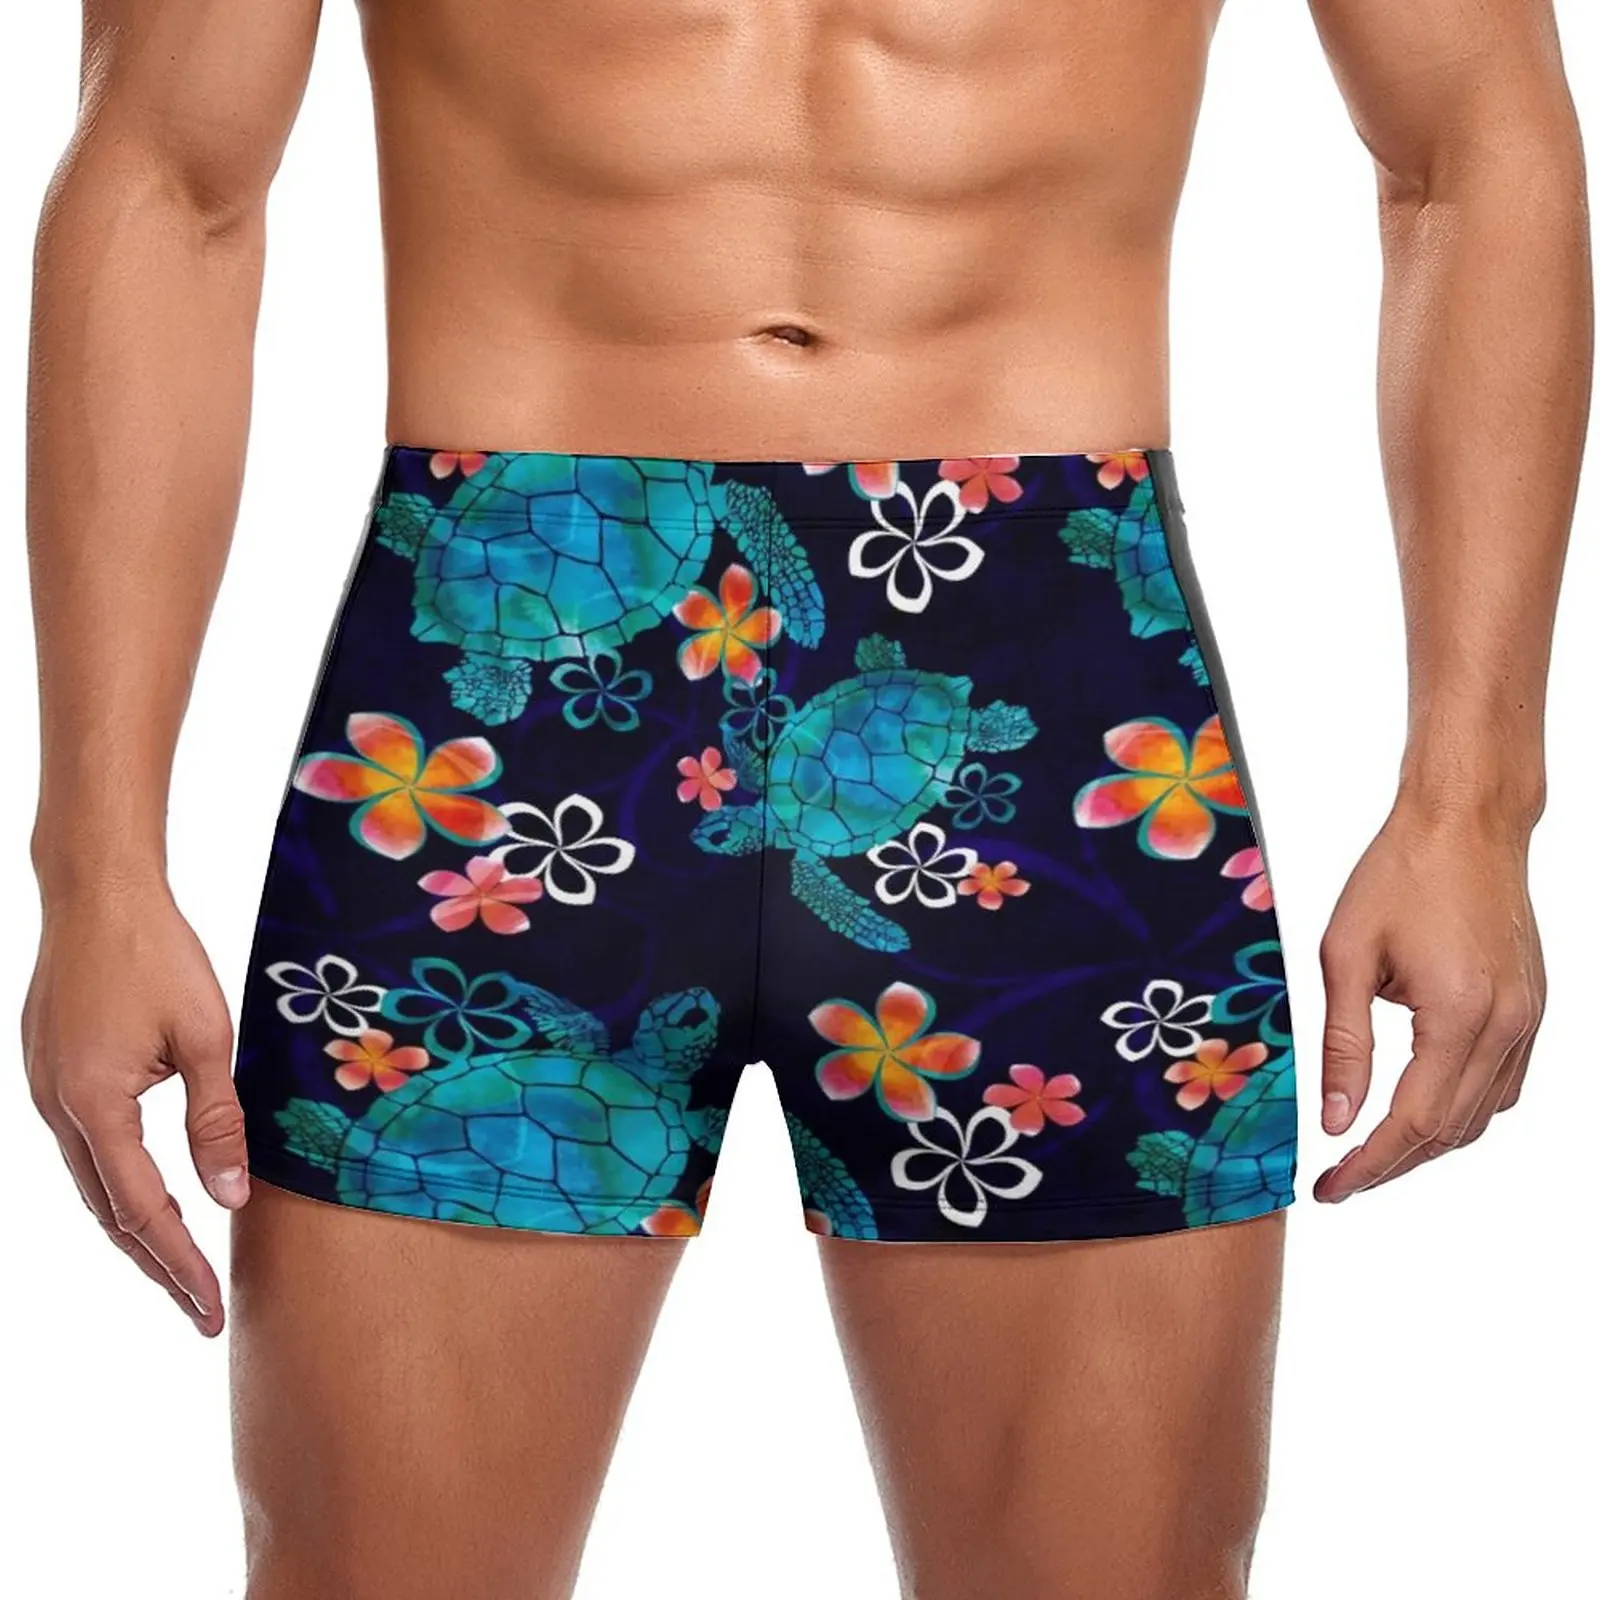 

Пляжные плавки с принтом, морская черепаха с цветами, купальные шорты на заказ, прочный мужской купальник большого размера